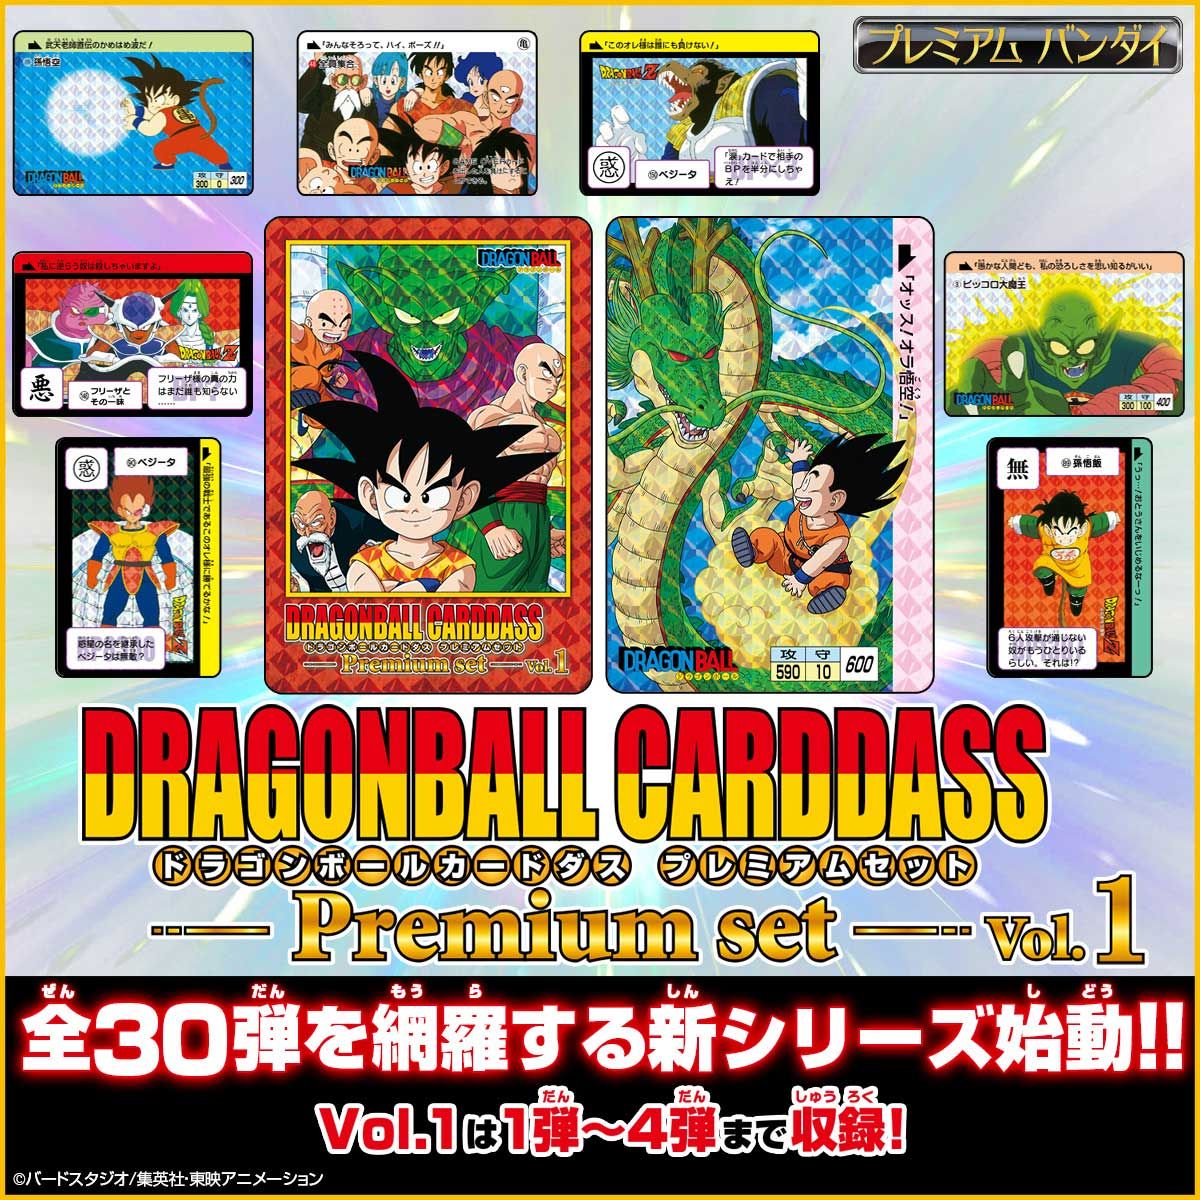 ドラゴンボールカードダス Premium set Vol.5 プレミアムセット